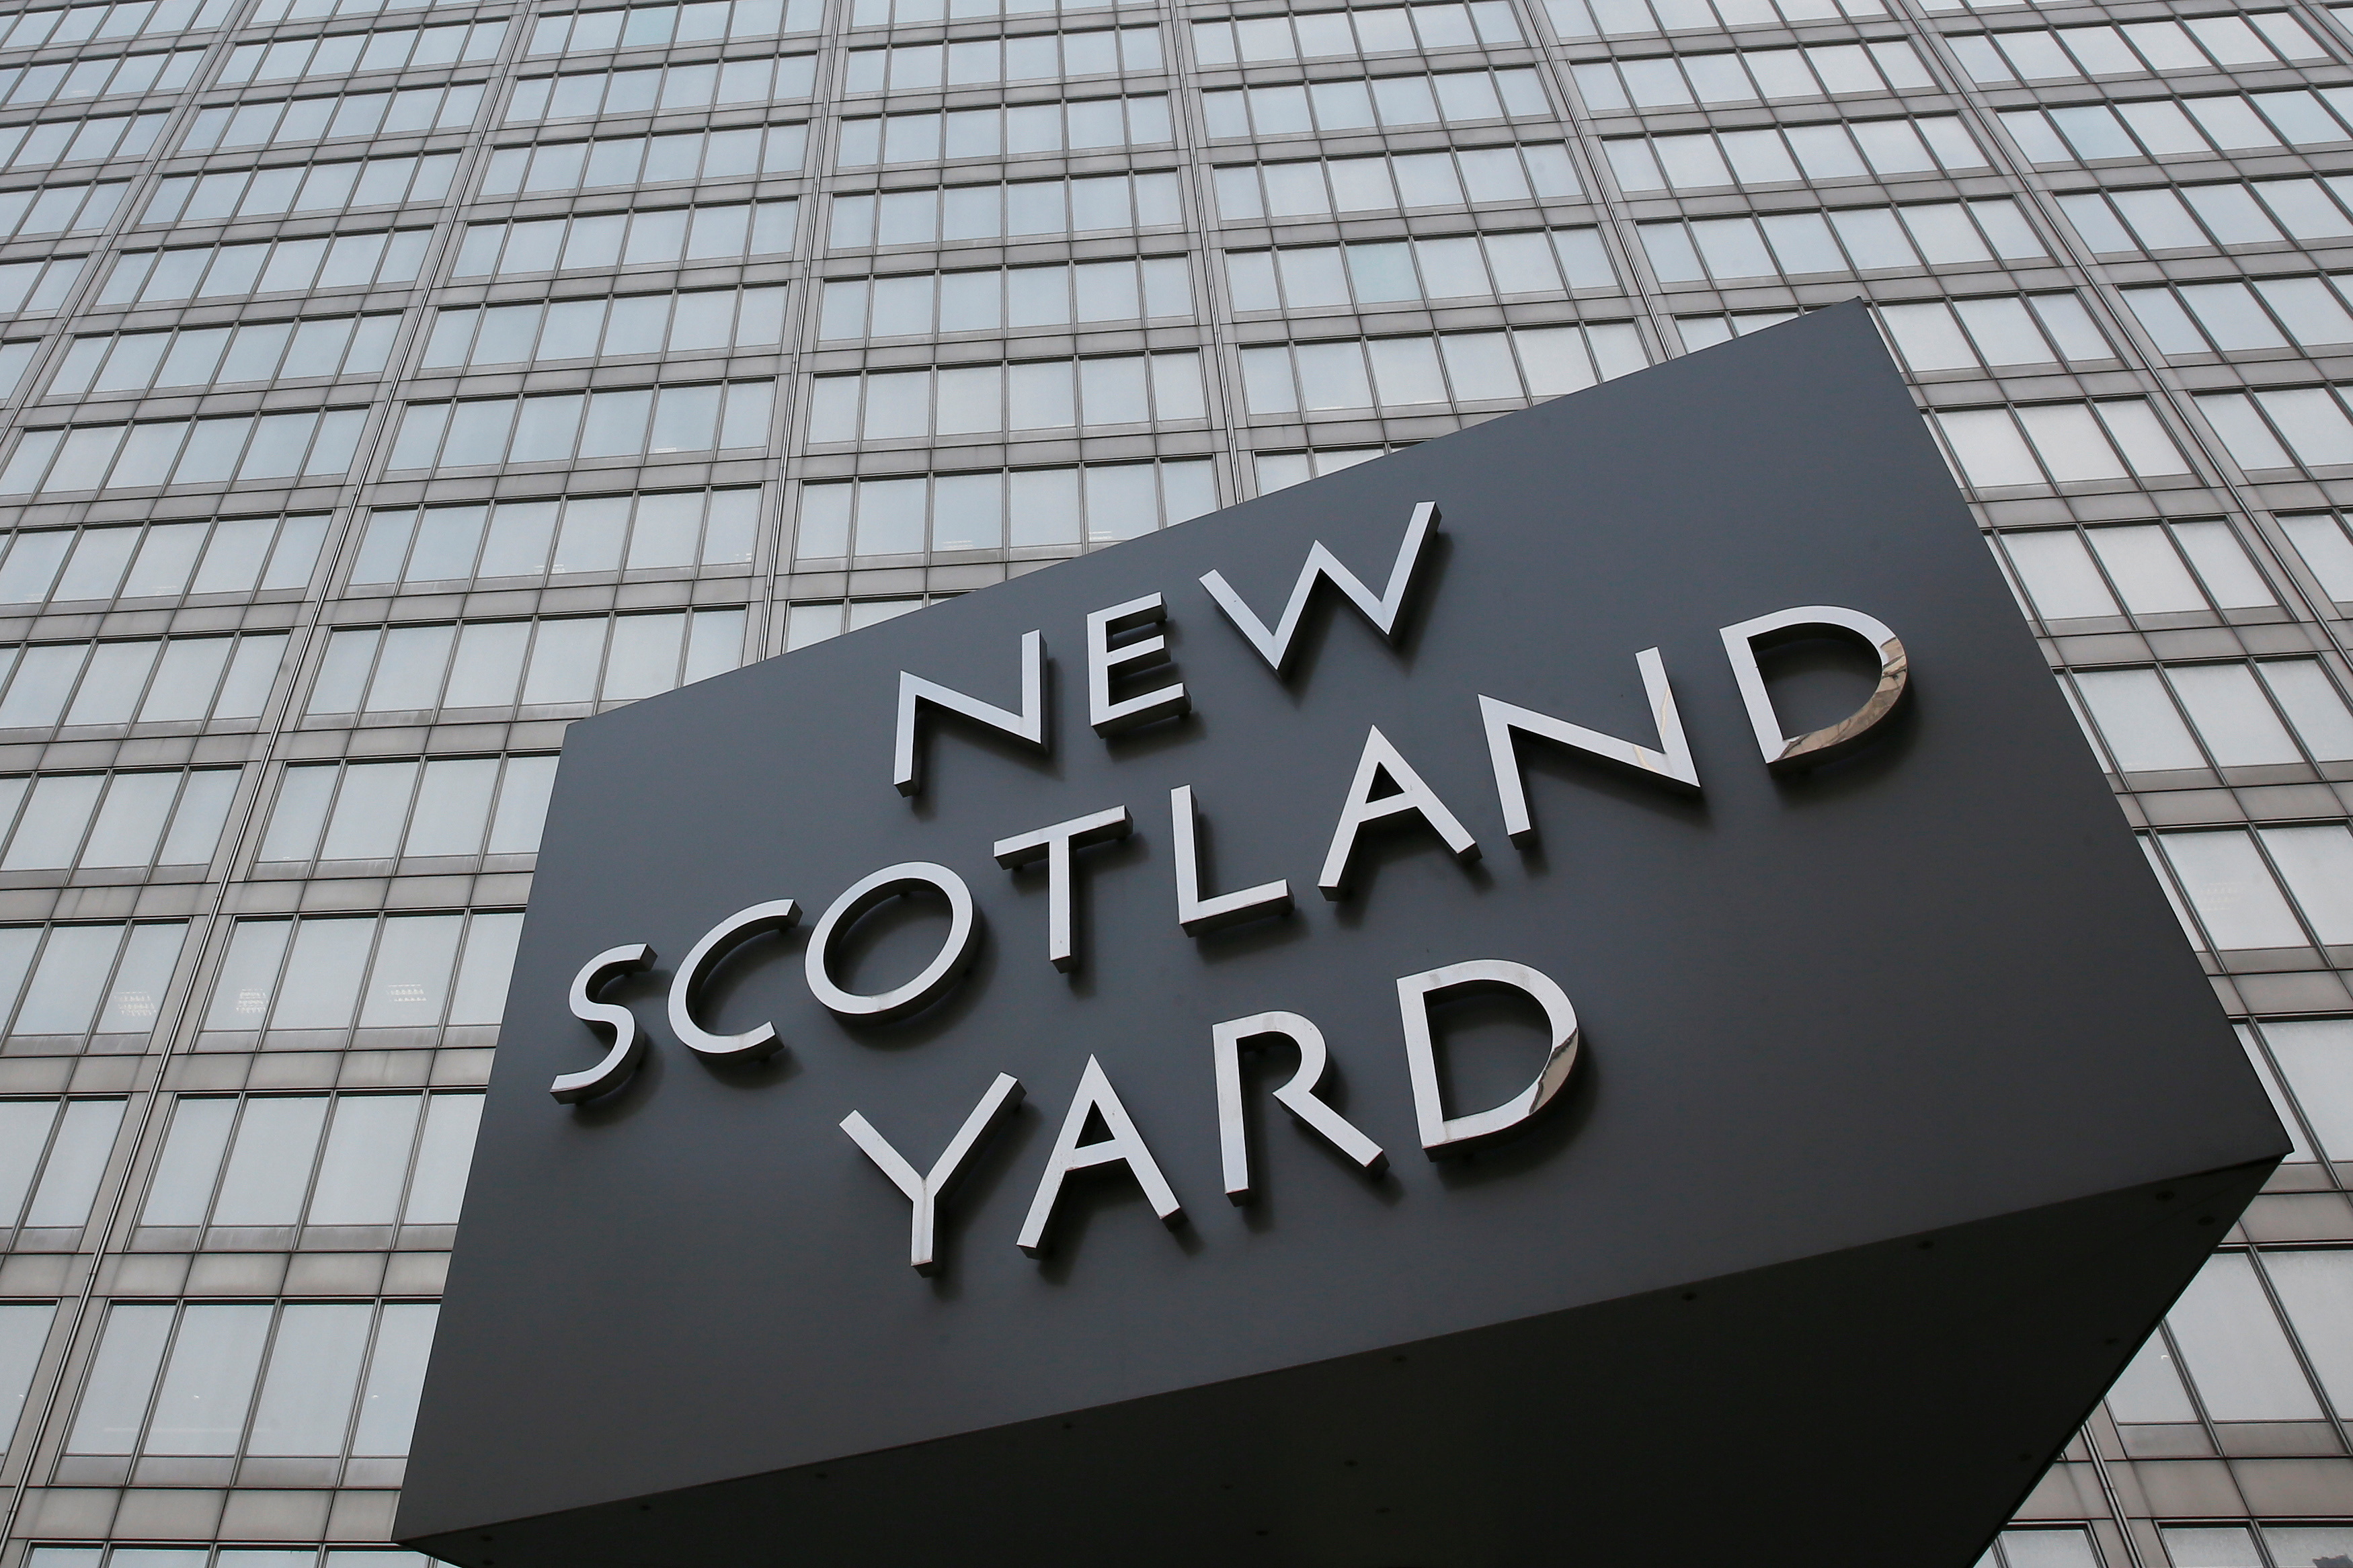 Foto de archivo: El cartel triangular giratorio se ve fuera de New Scotland Yard en el centro de Londres (REUTERS/Stefan Wermuth)